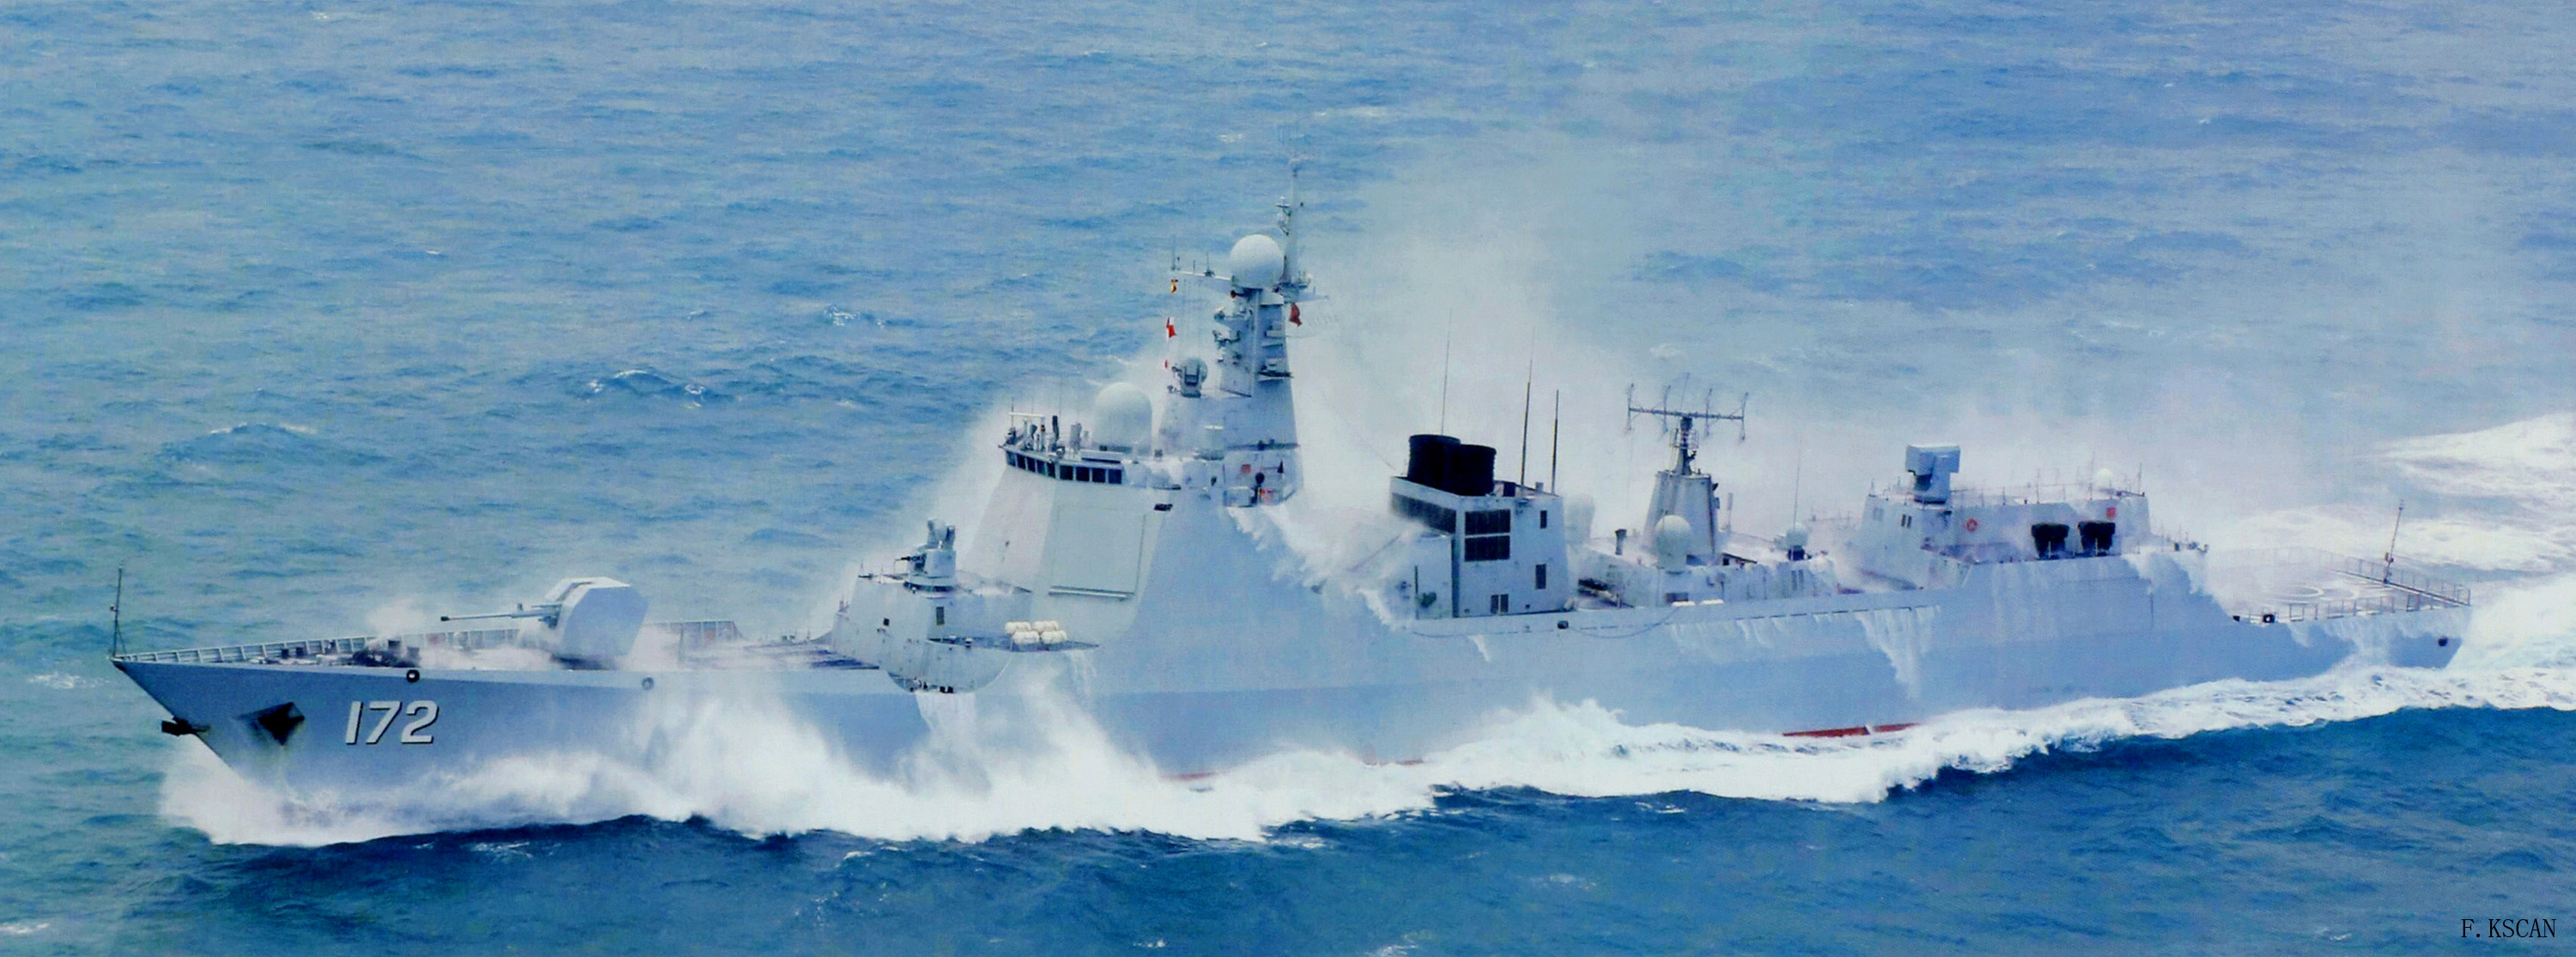 洗消作業中的中國海軍昆明艦